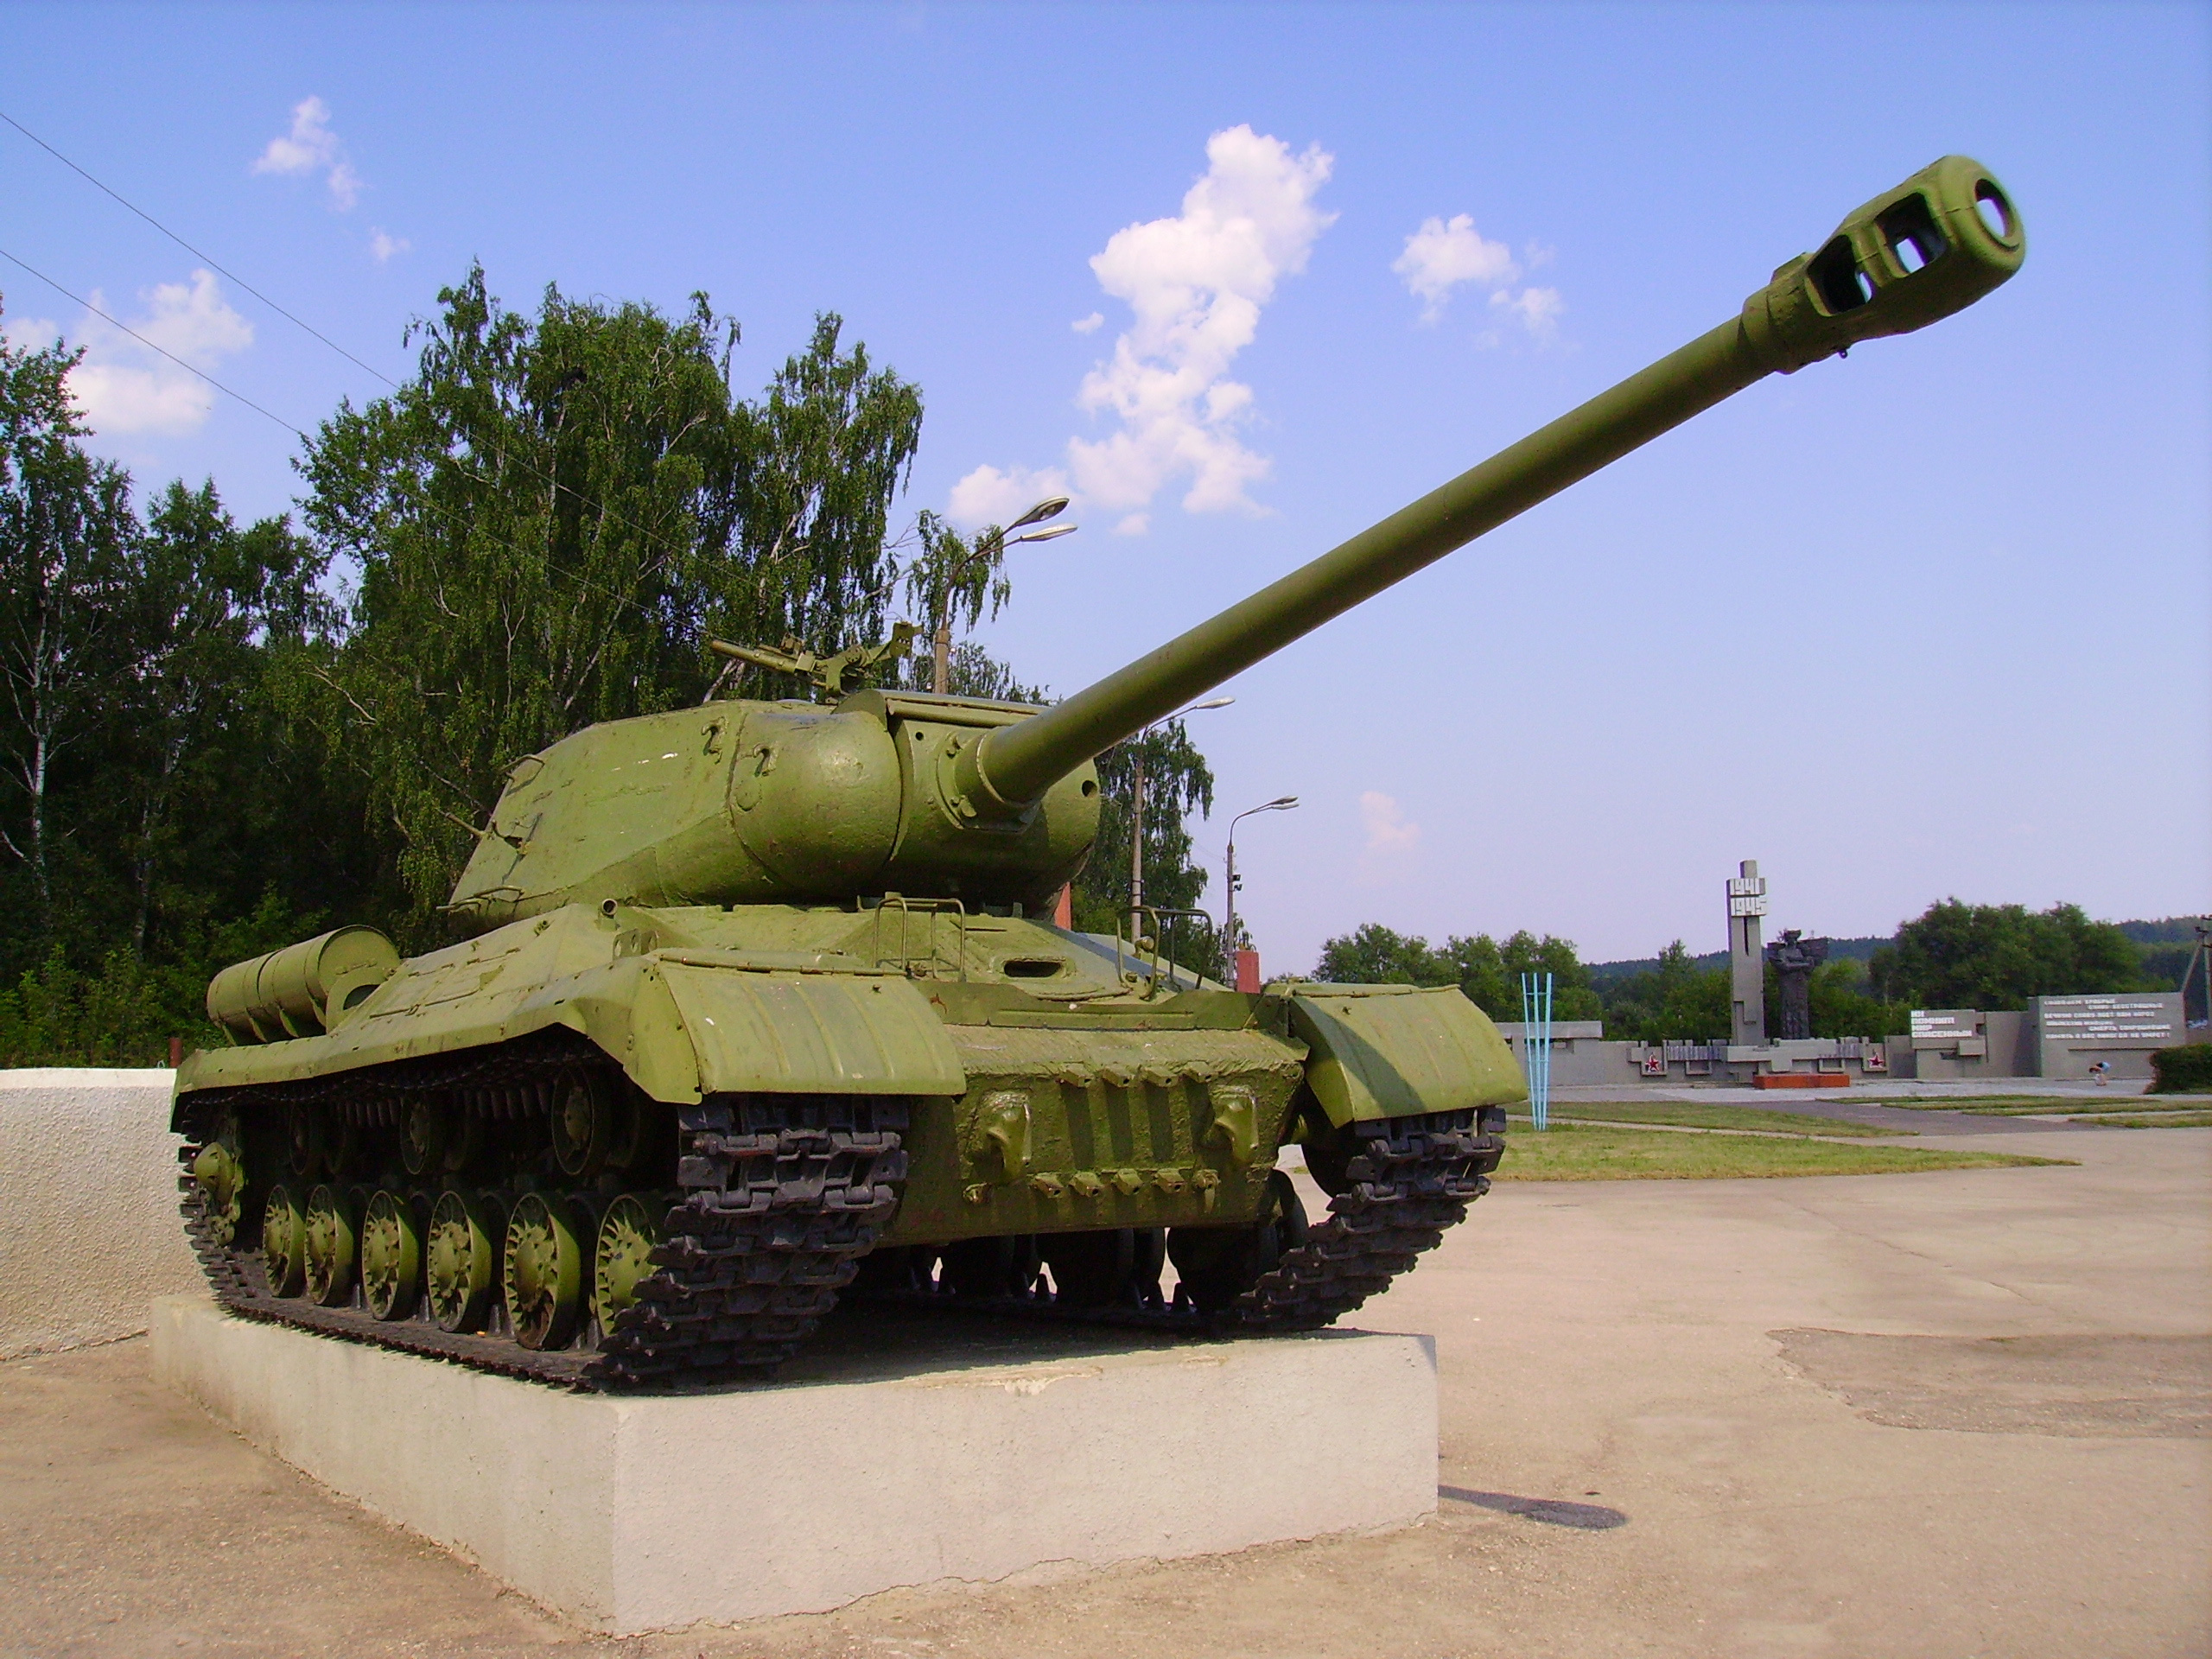 Фотки исы. ИС 2. Танк Иосиф Сталин. Танк ИС-2. Танк ИС-2 (Иосиф Сталин).